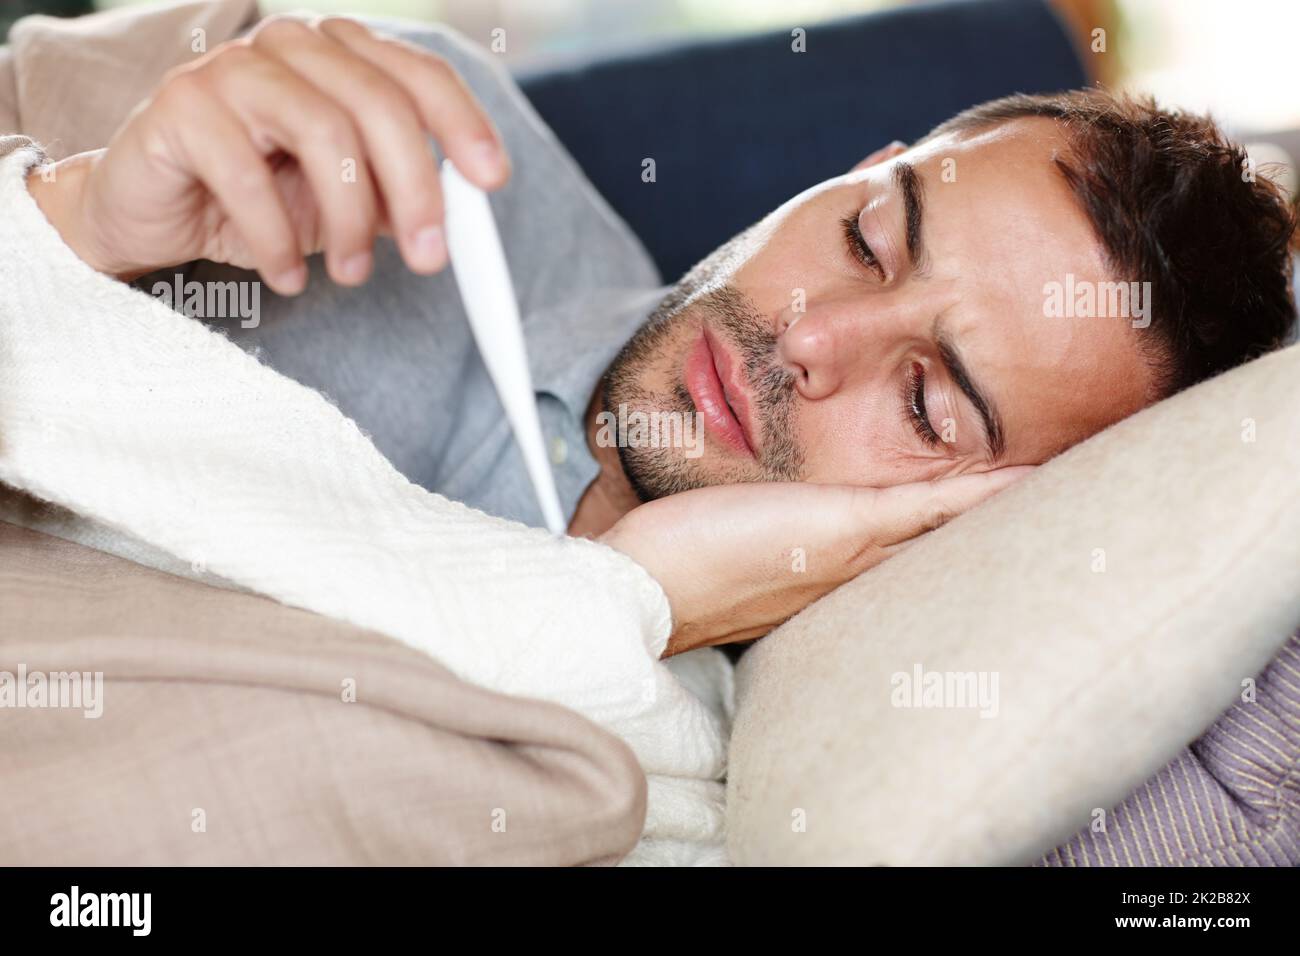 Garder un œil sur sa température. Prise de vue d'un jeune homme allongé sur le canapé et lisant sa température sur un thermomètre. Banque D'Images